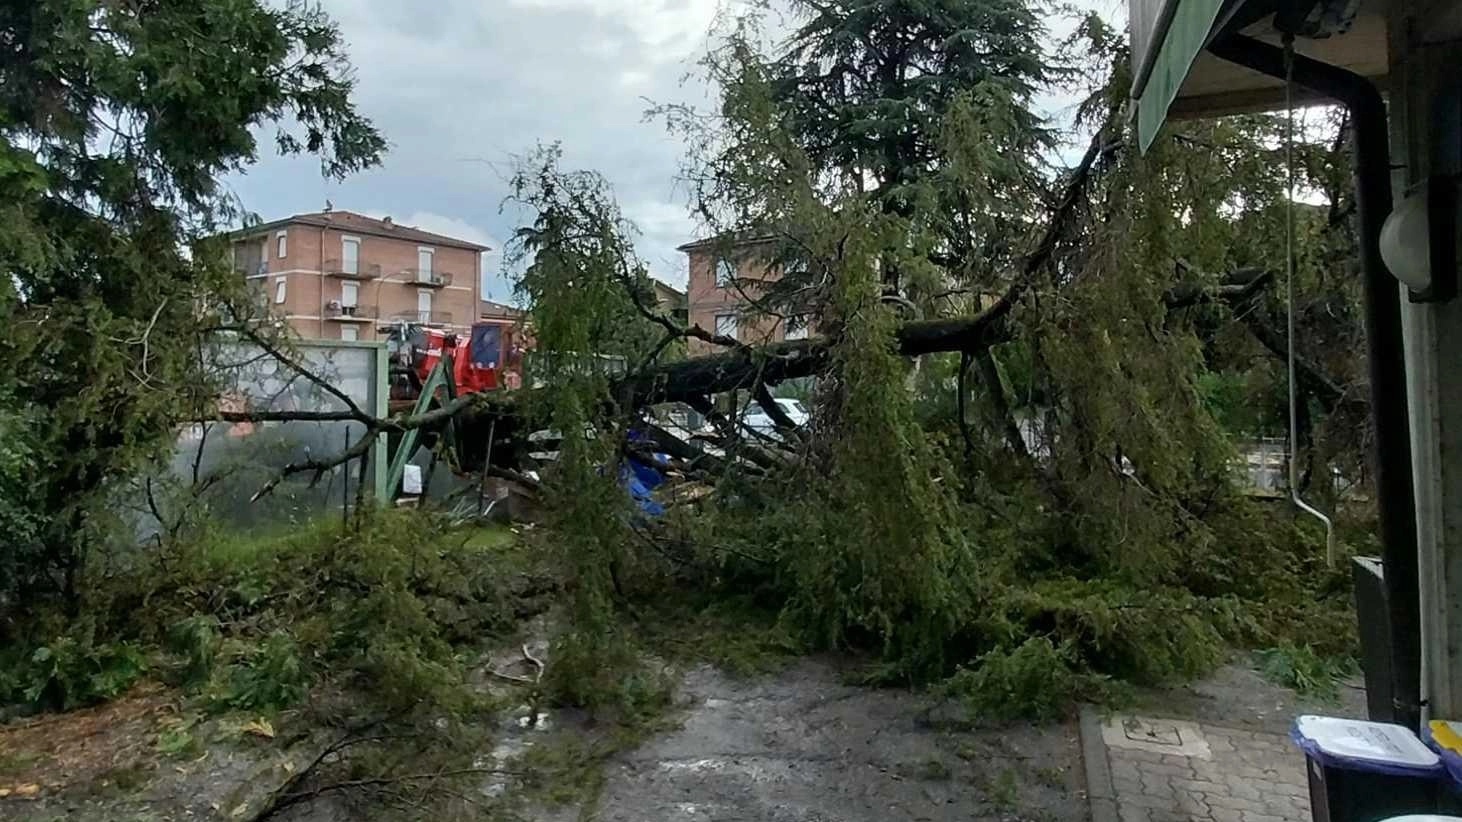 Crolla un cedro a Rivalta nel cortile della scuola: "Fortuna era chiusa"